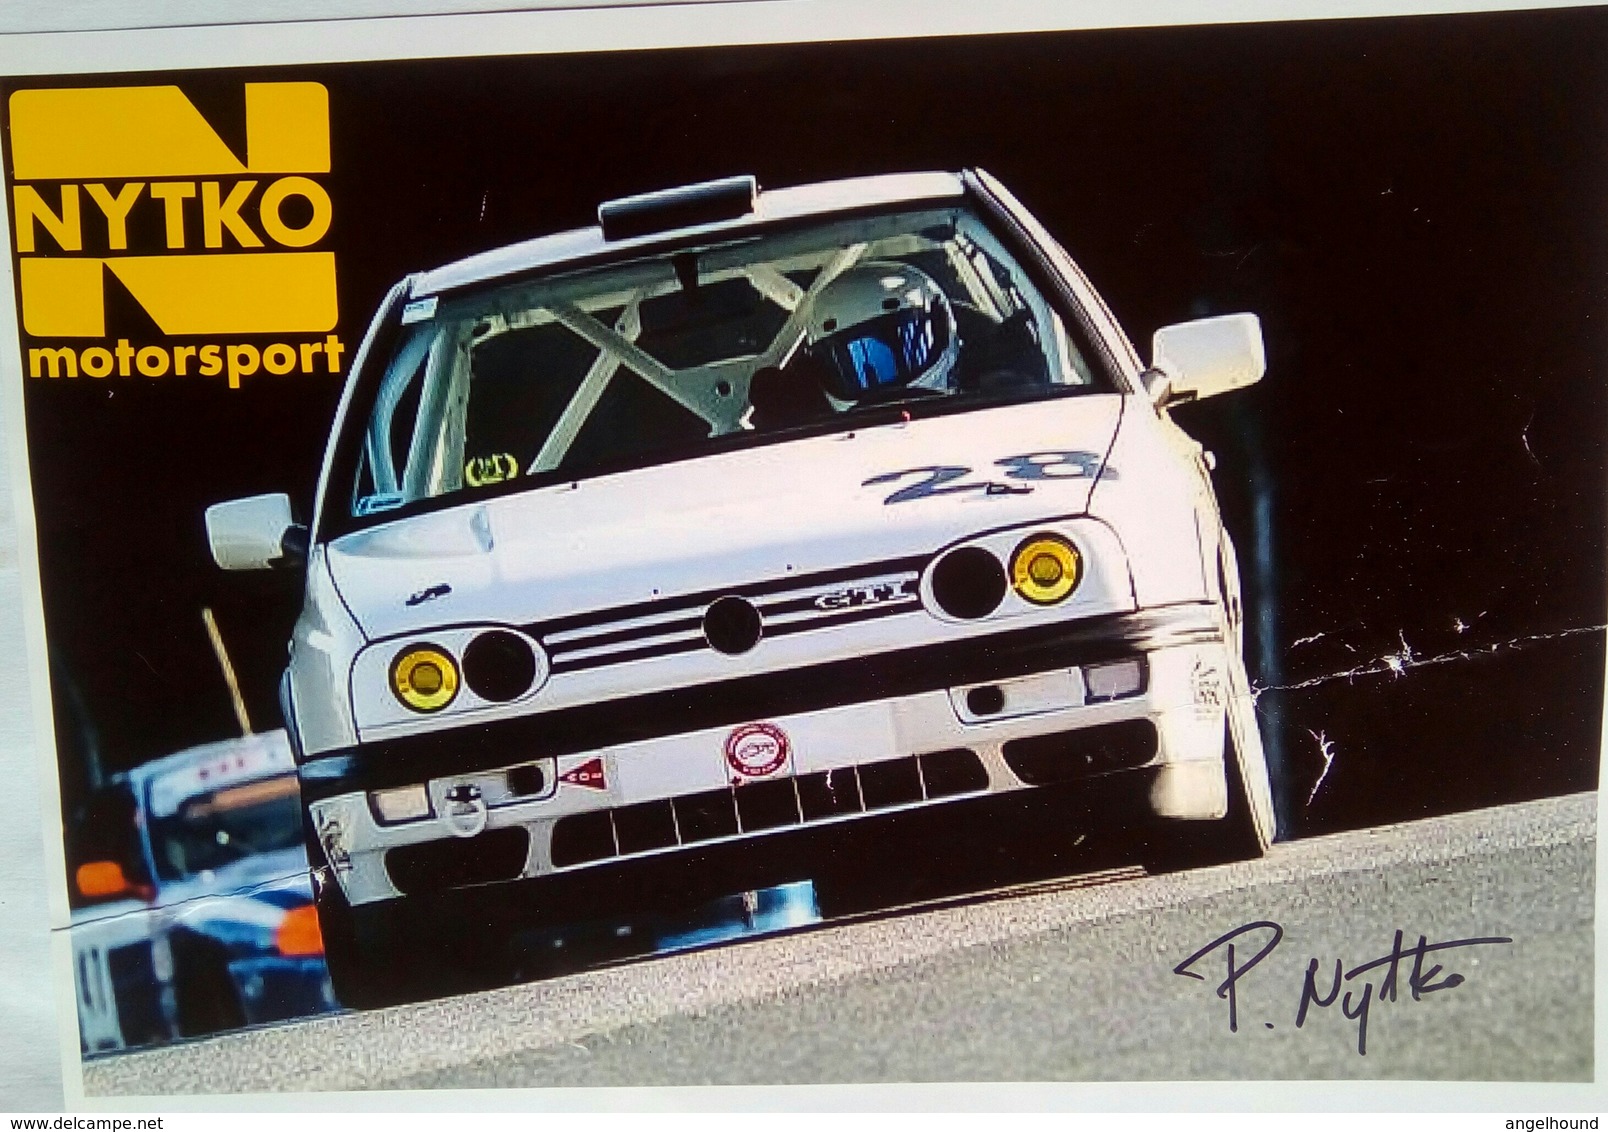 P Nytko  ( Nytko Motorsport) - Handtekening